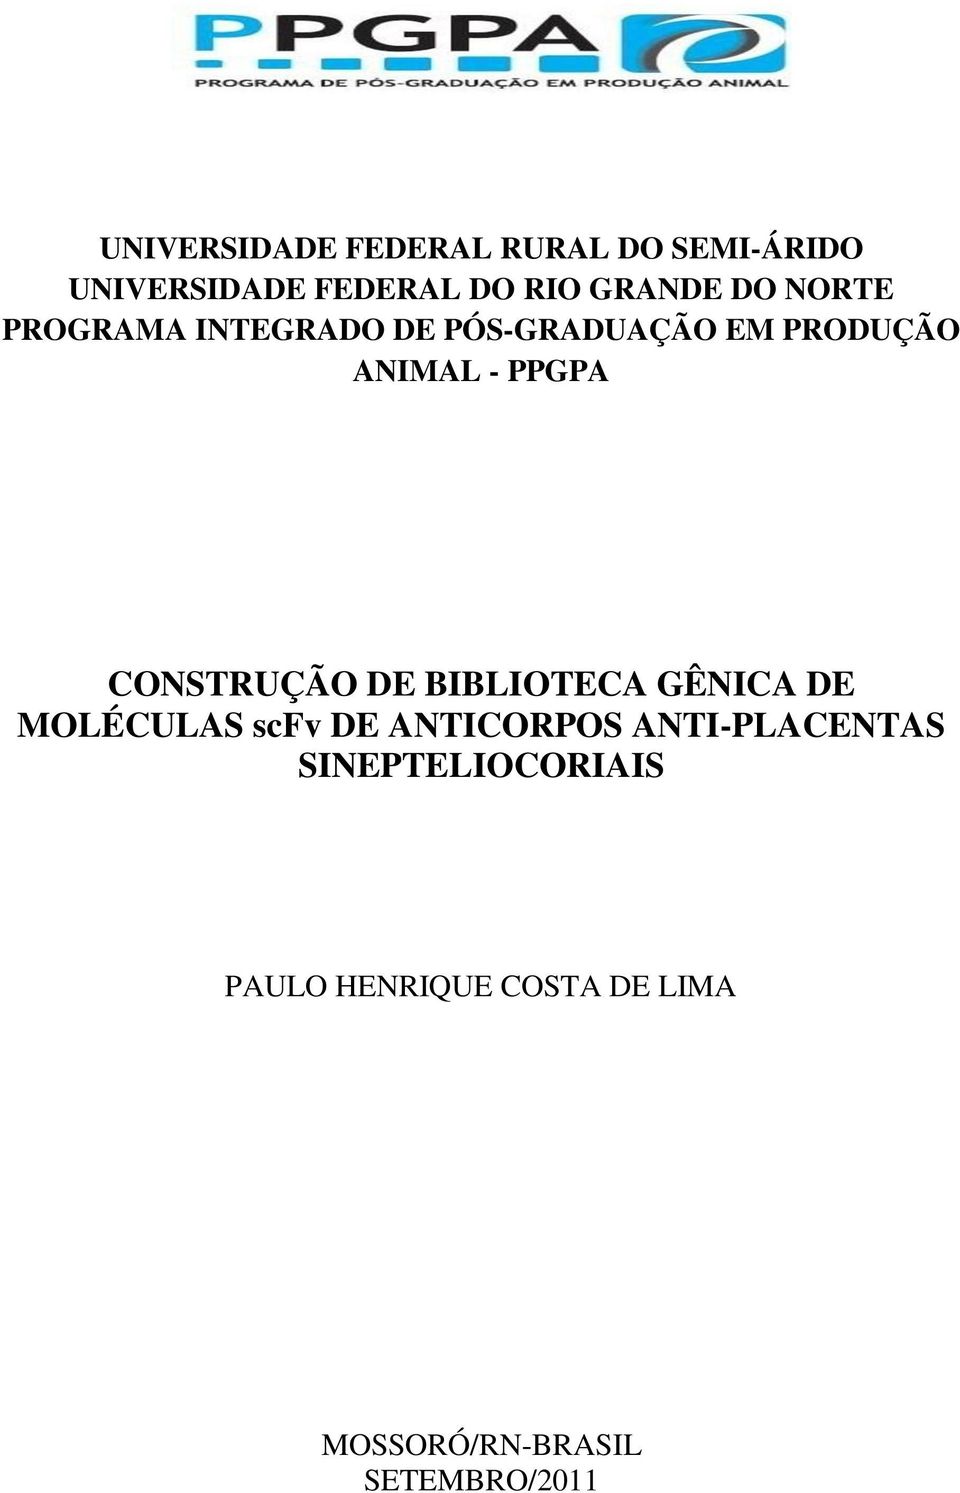 CONSTRUÇÃO DE BIBLIOTECA GÊNICA DE MOLÉCULAS scfv DE ANTICORPOS